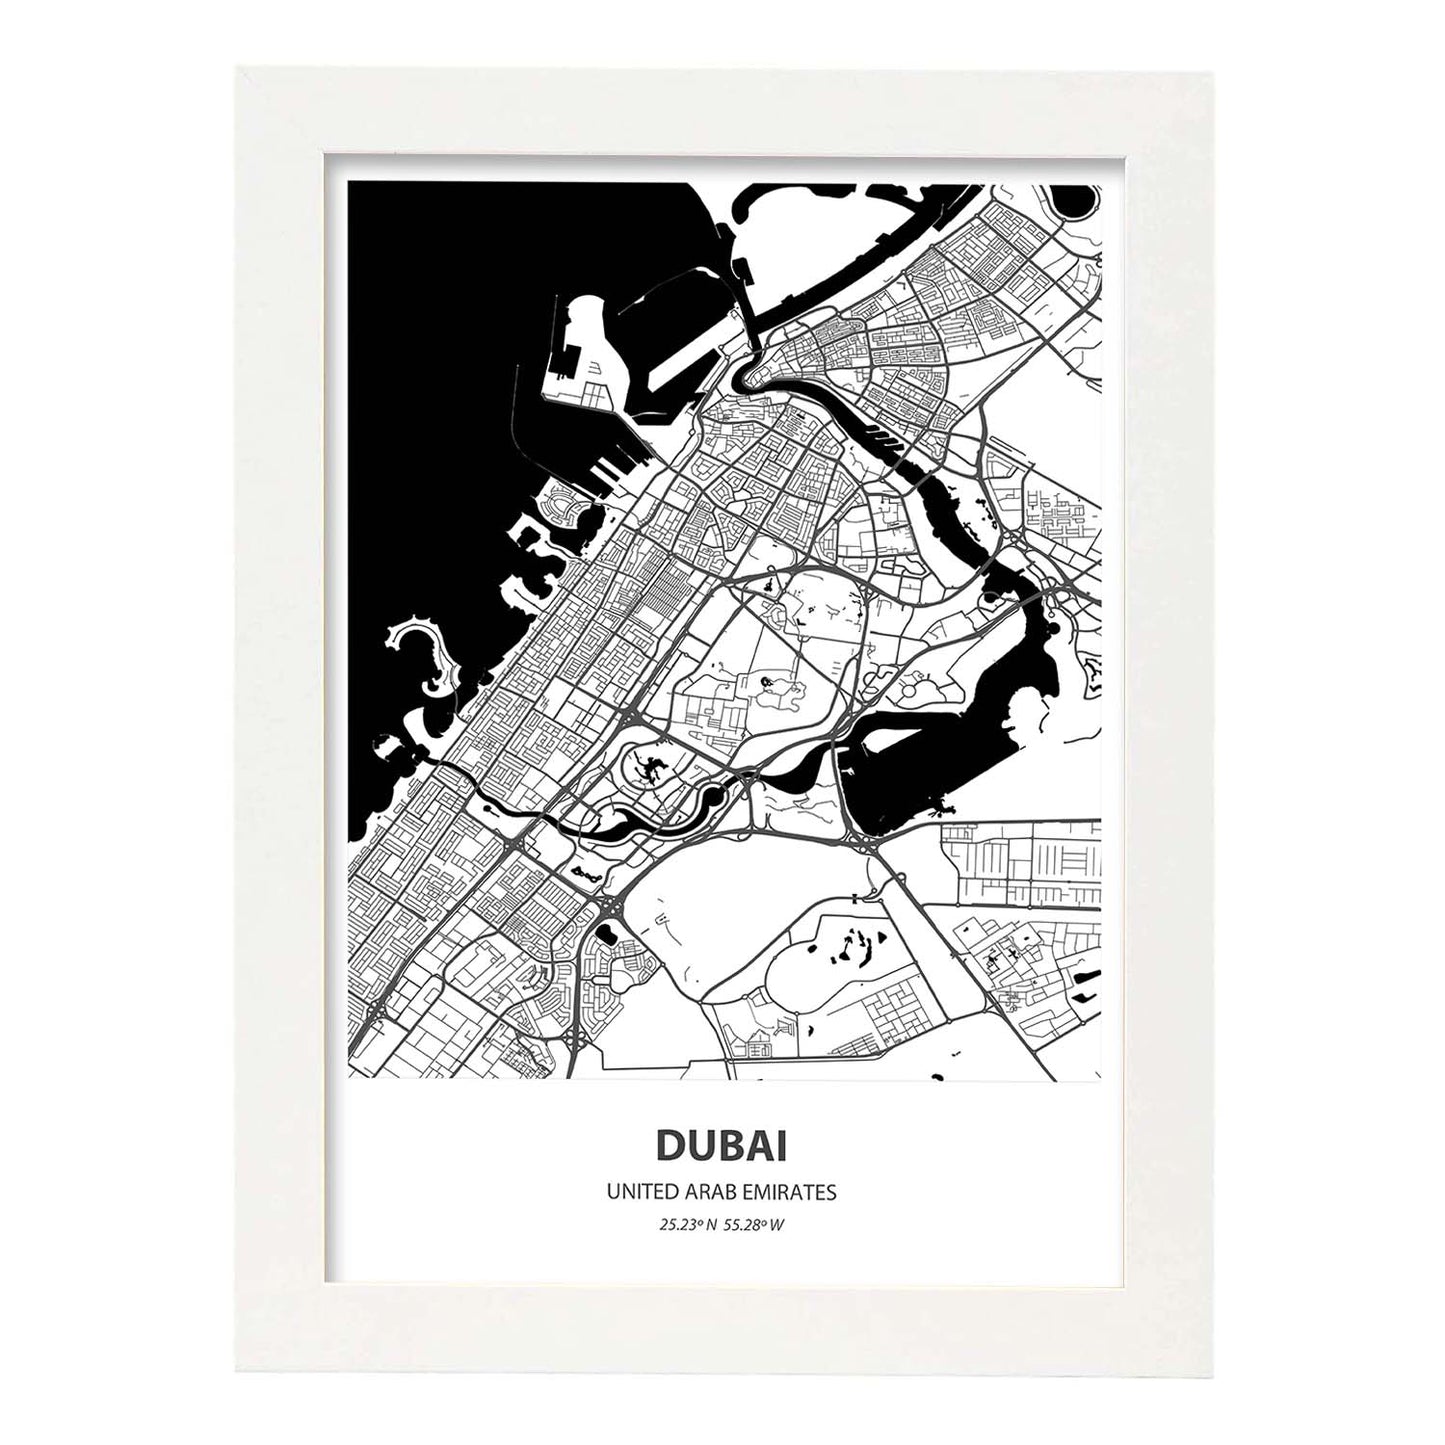 Poster con mapa de Dubai - Emiratos Arabes Unidos. Láminas de ciudades de Oriente Medio con mares y ríos en color negro.-Artwork-Nacnic-A4-Marco Blanco-Nacnic Estudio SL